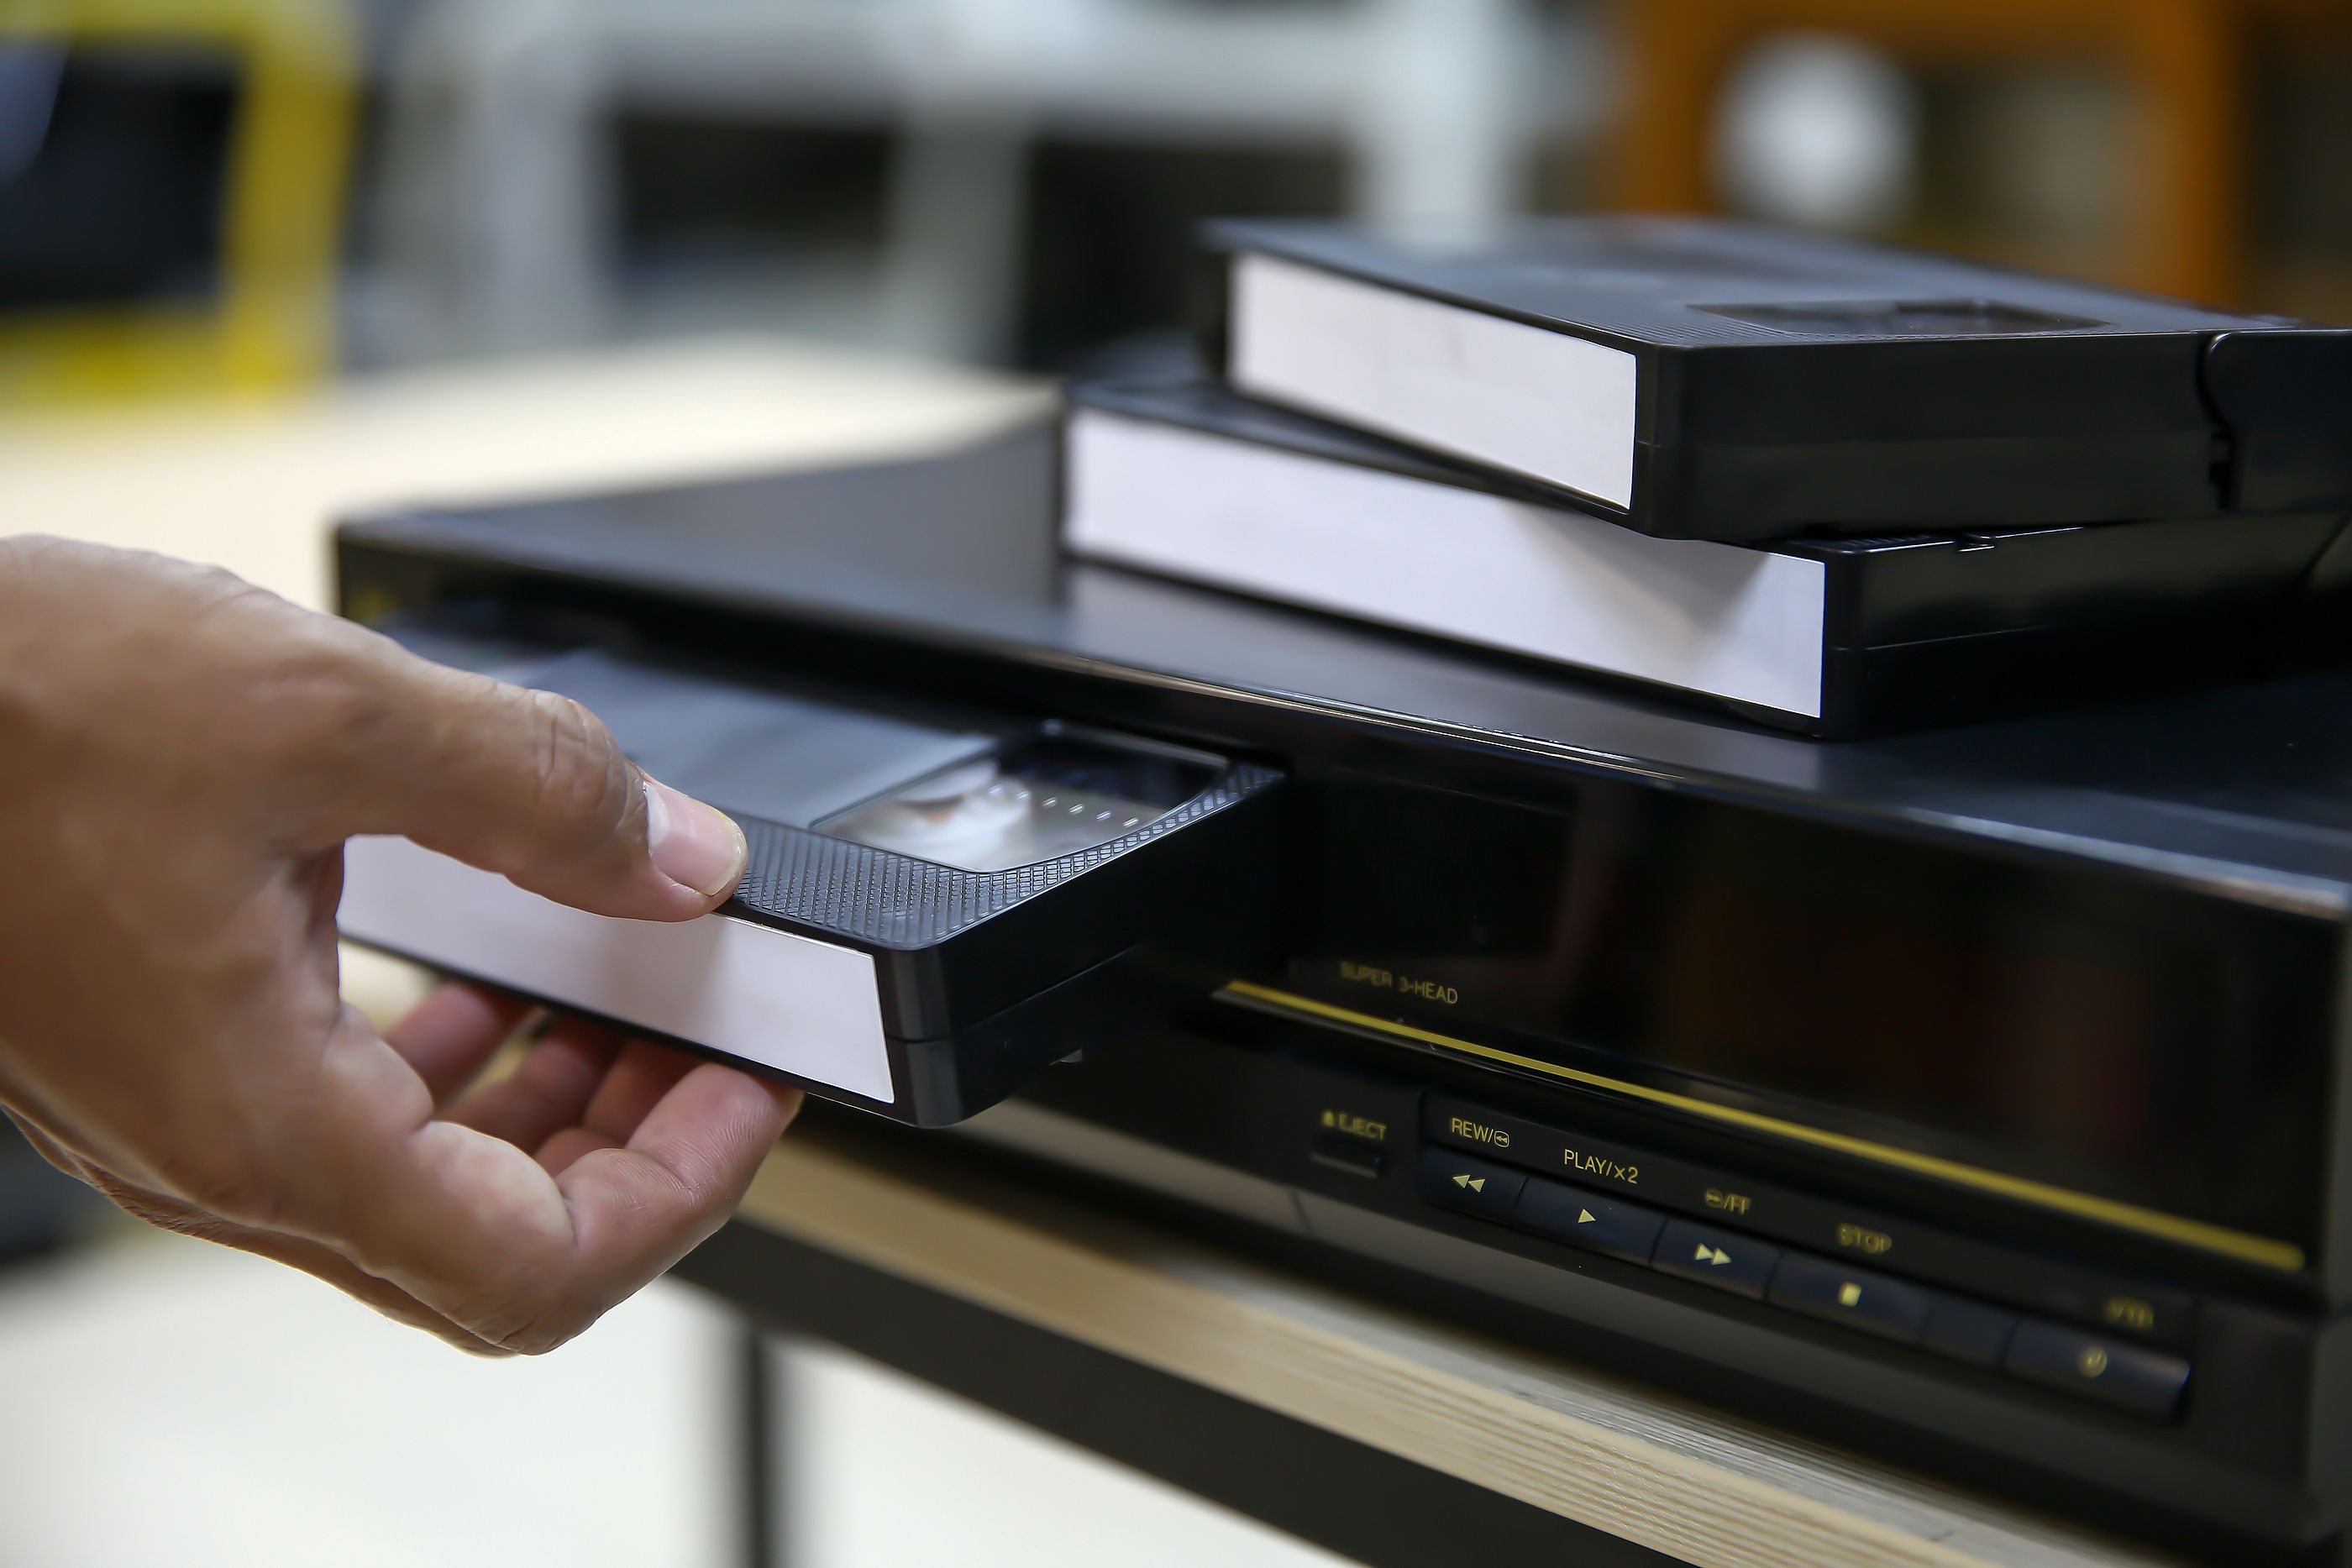 Reproductores VHS/VCR en venta en Chiclayo